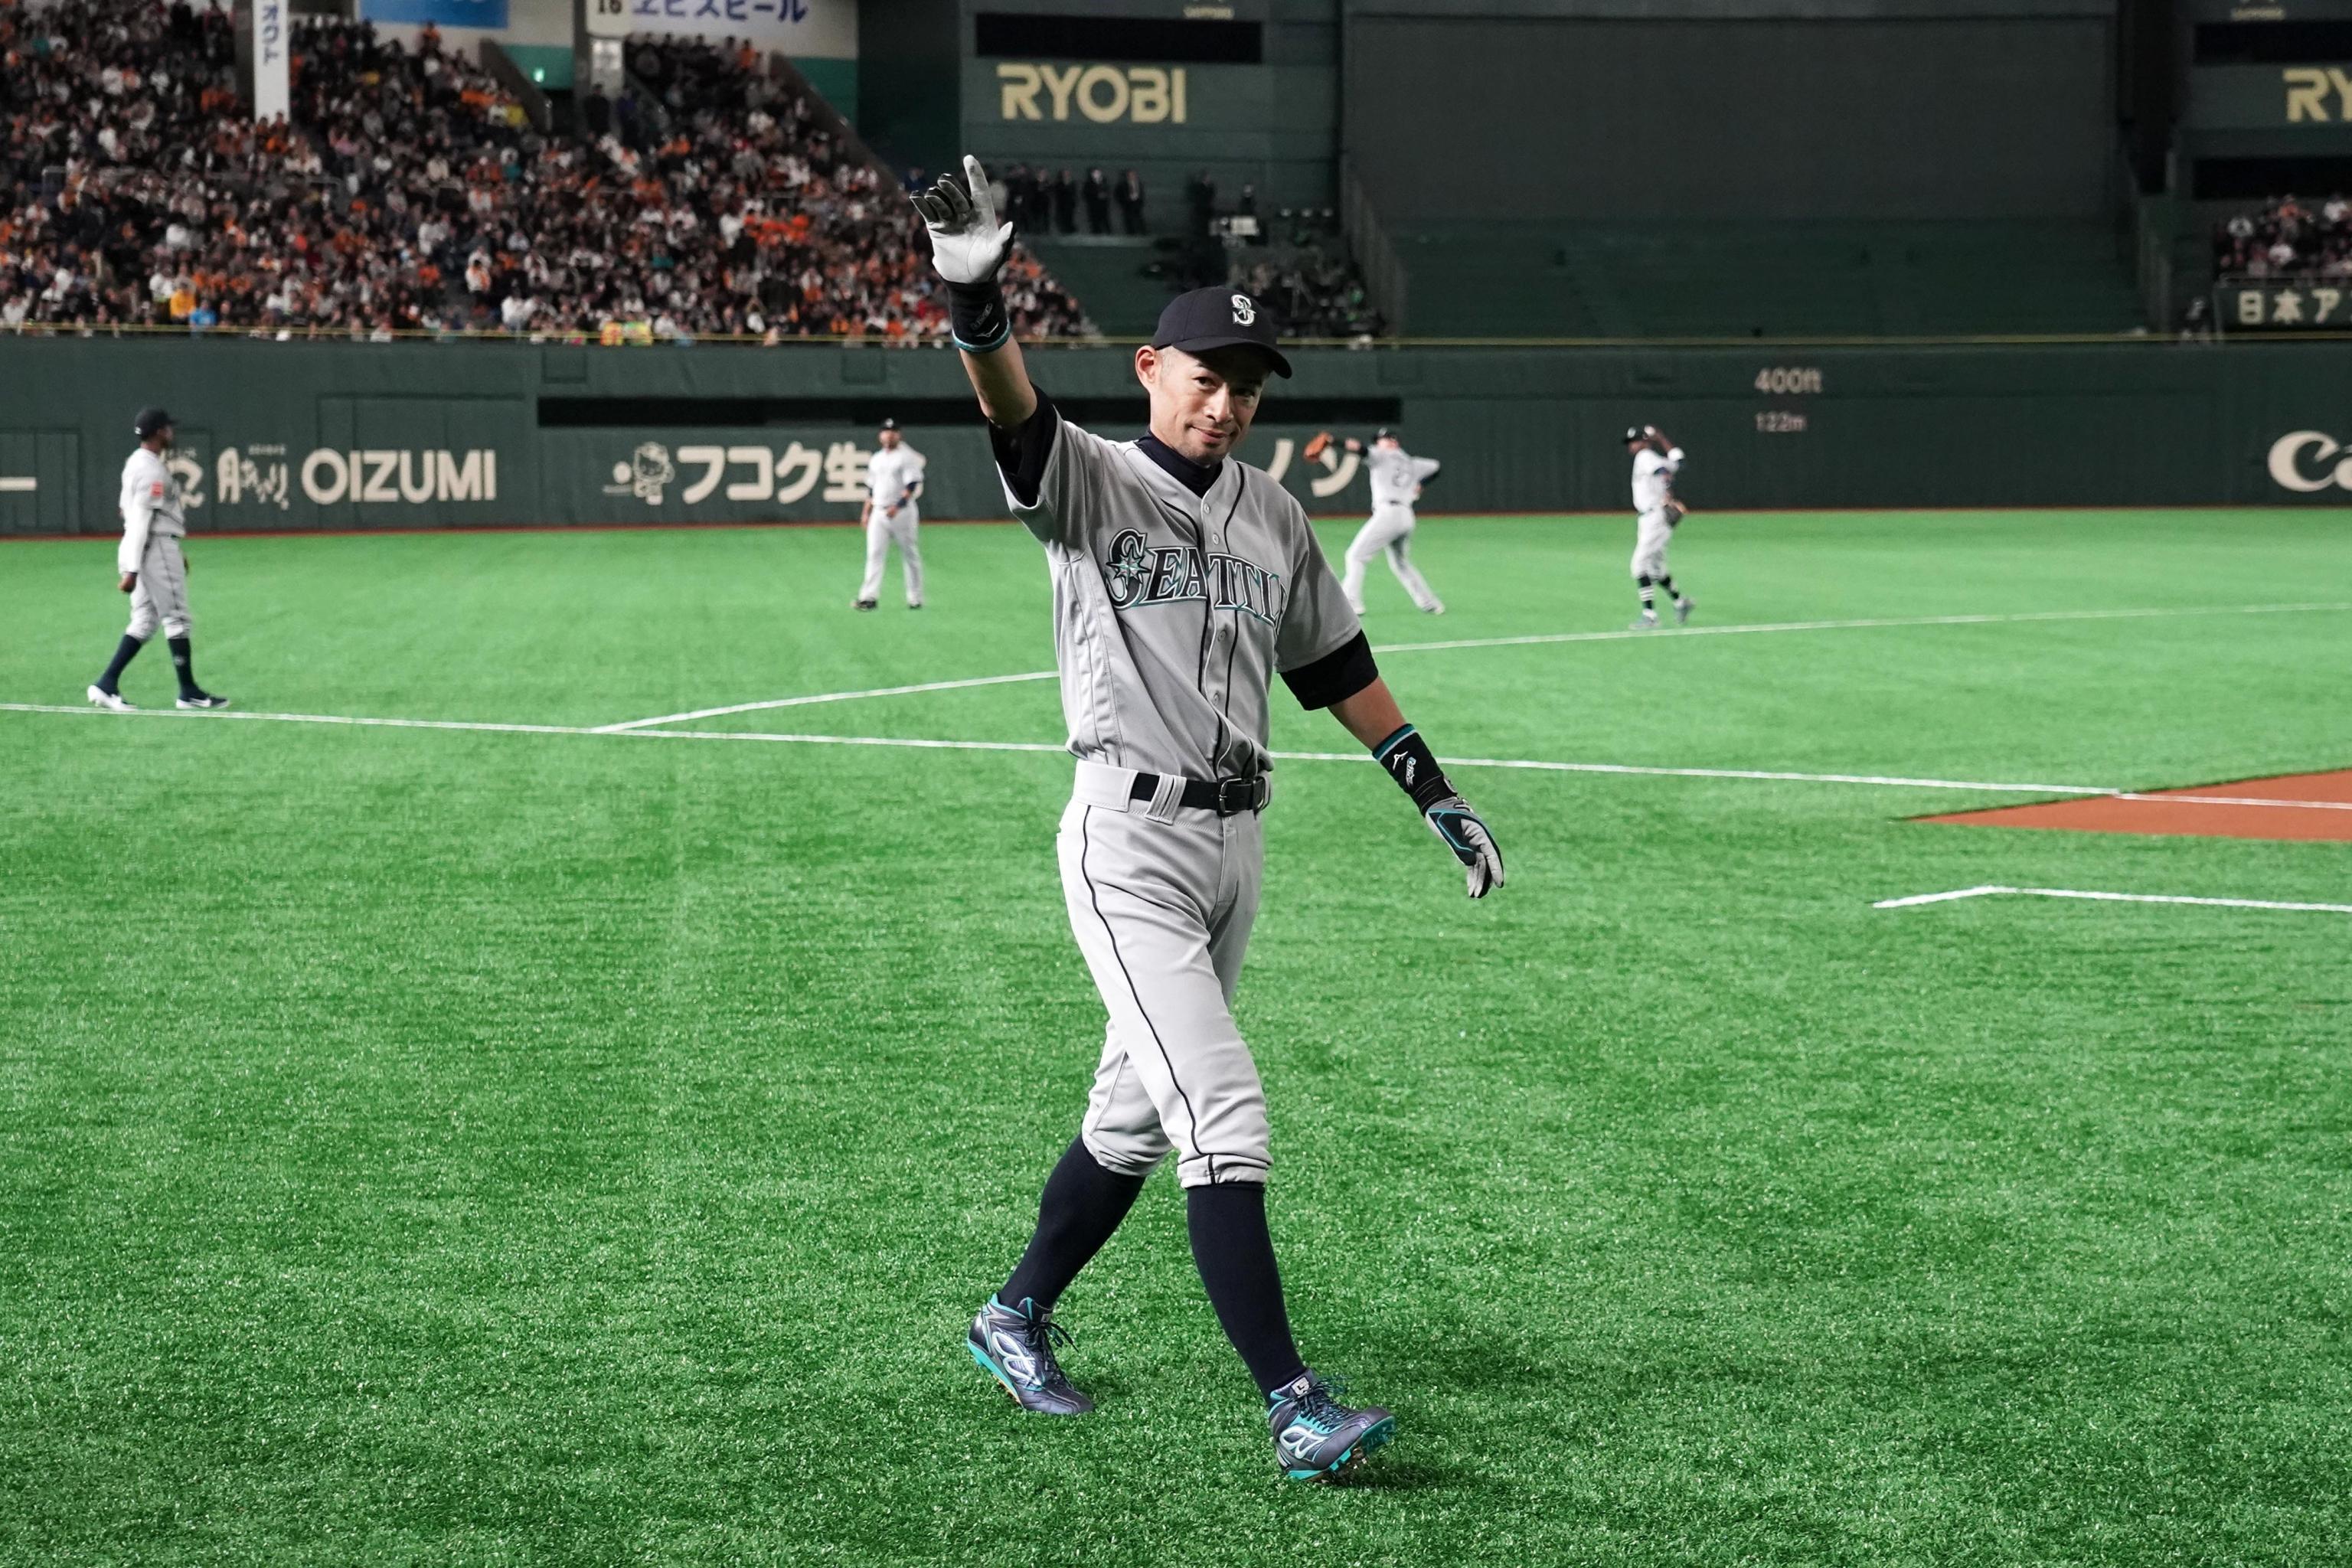 How 45-Year-Old Ichiro Suzuki's Star Power Changed MLB Forever